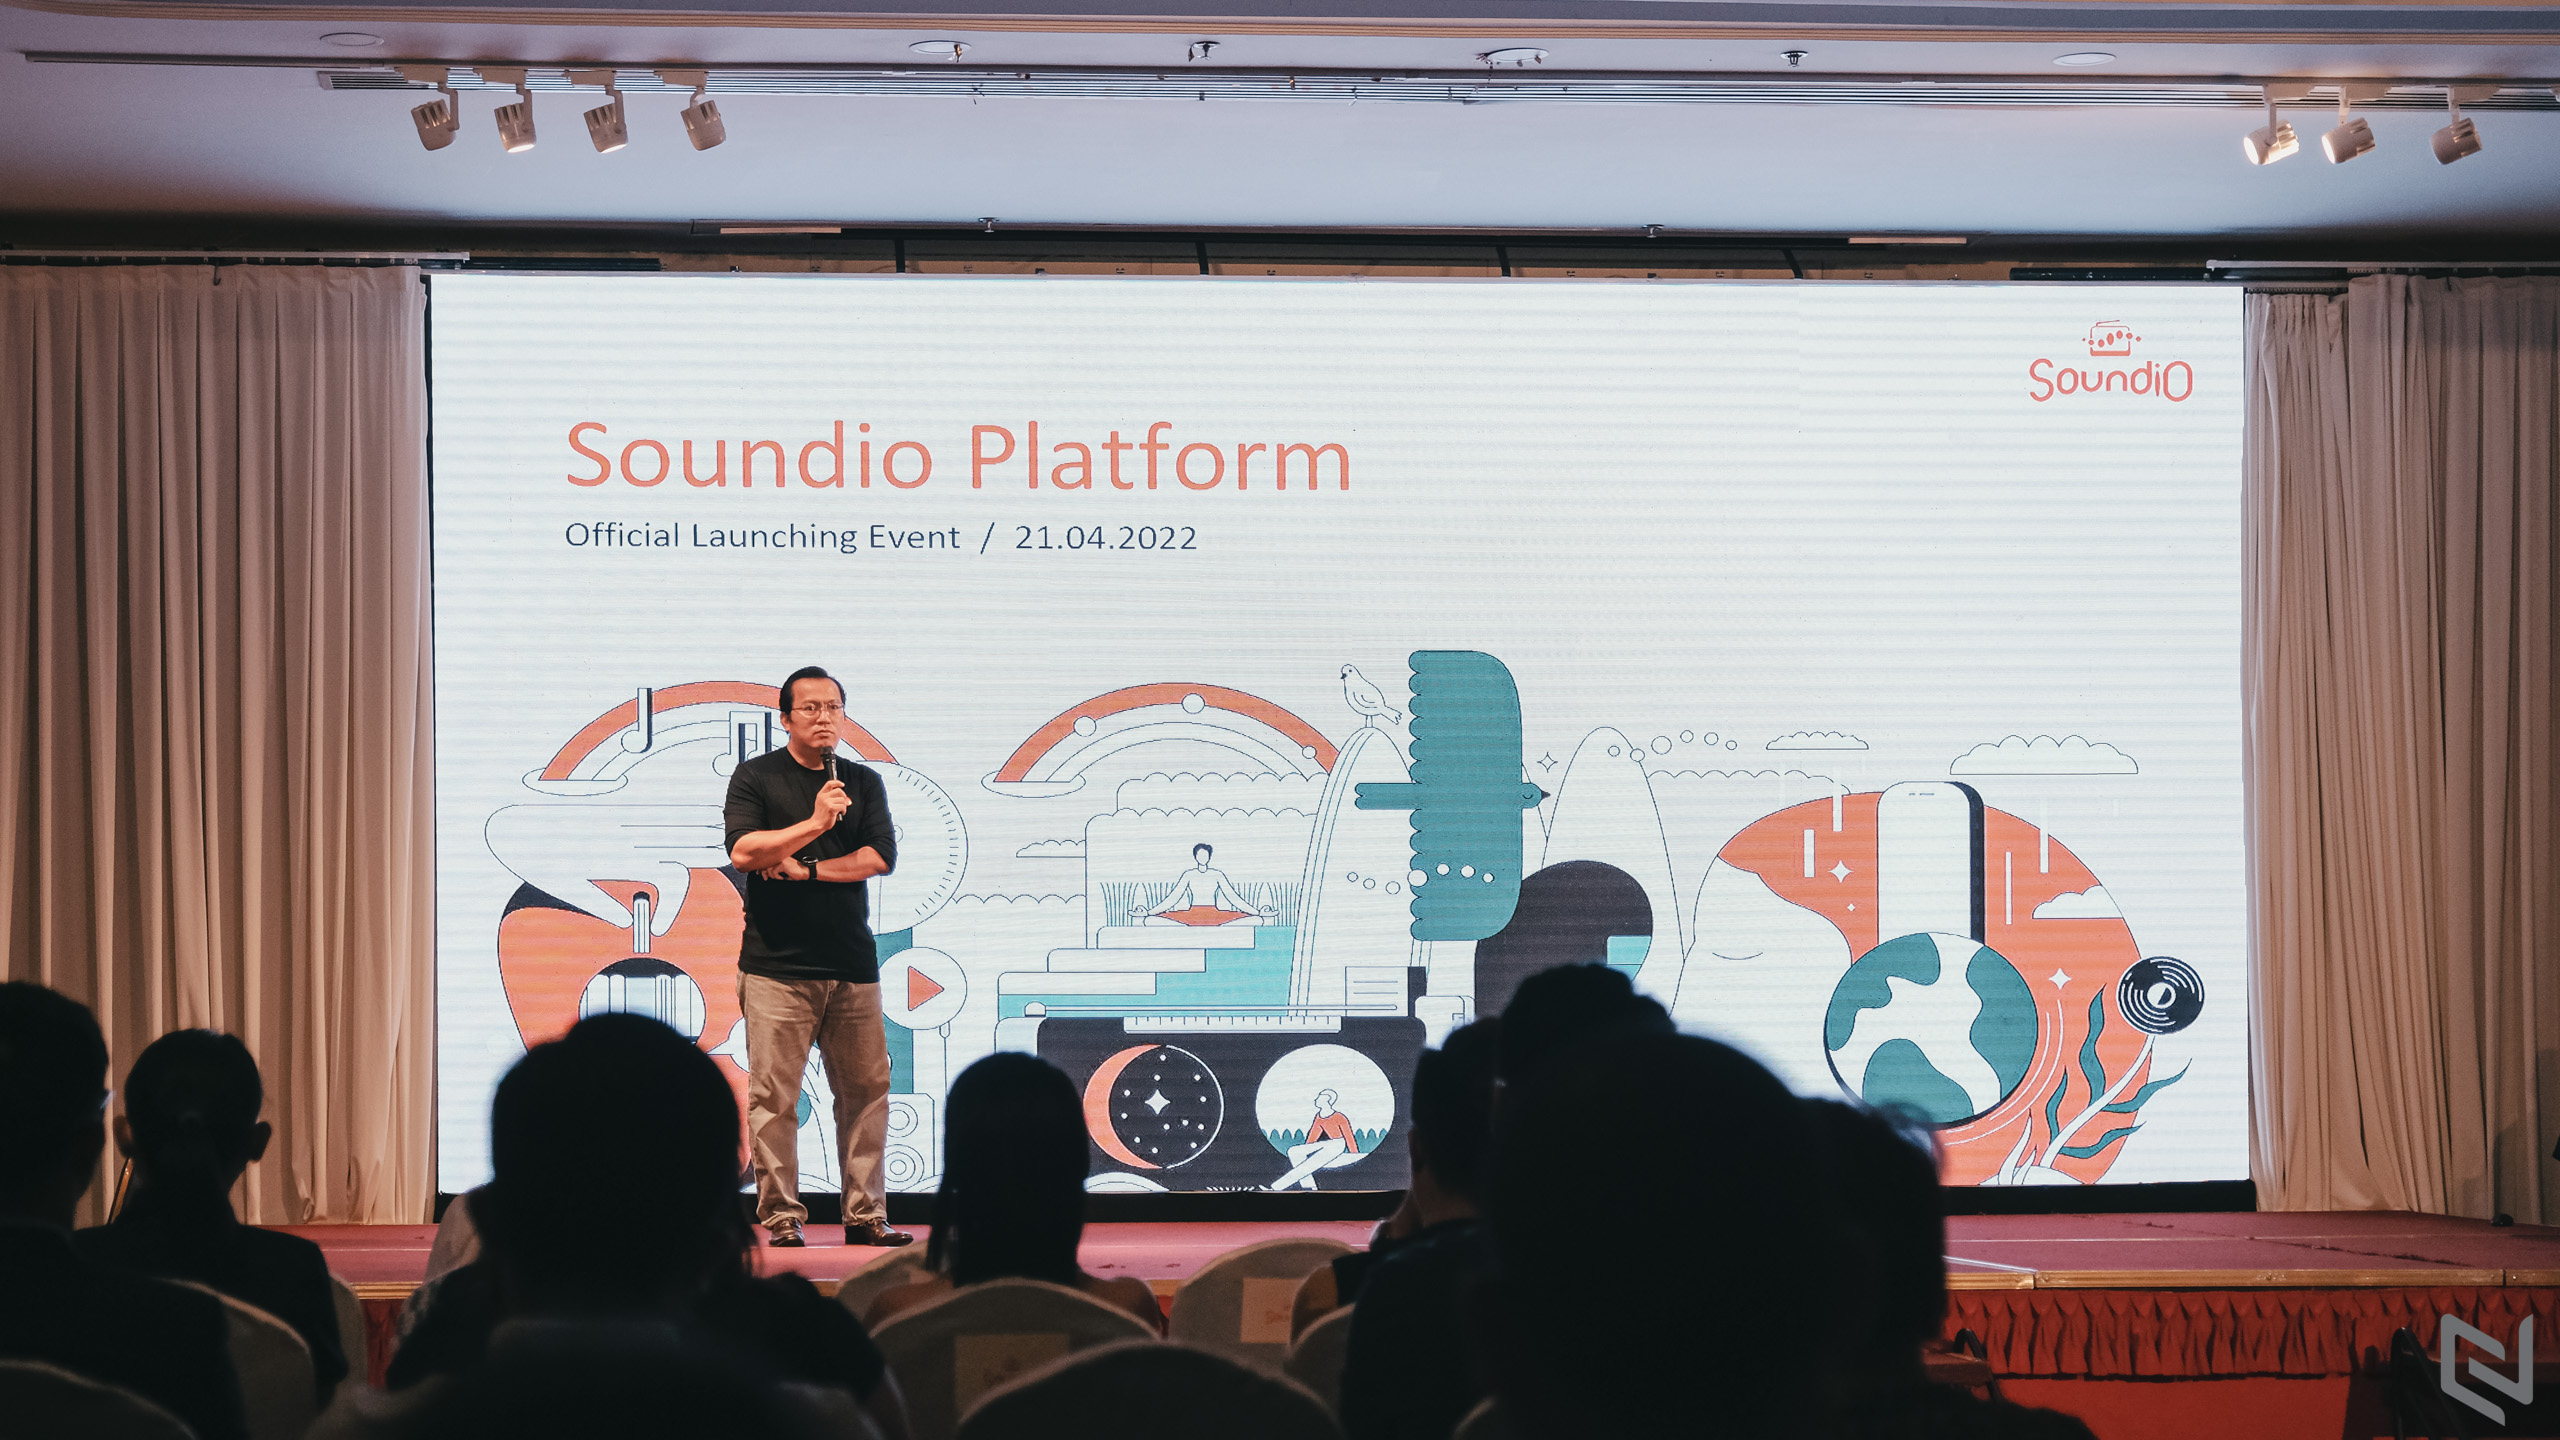 Ứng dụng âm thanh Soundio chính thức ra mắt, nền tảng giải trí và chia sẻ kiến thức bằng âm thanh